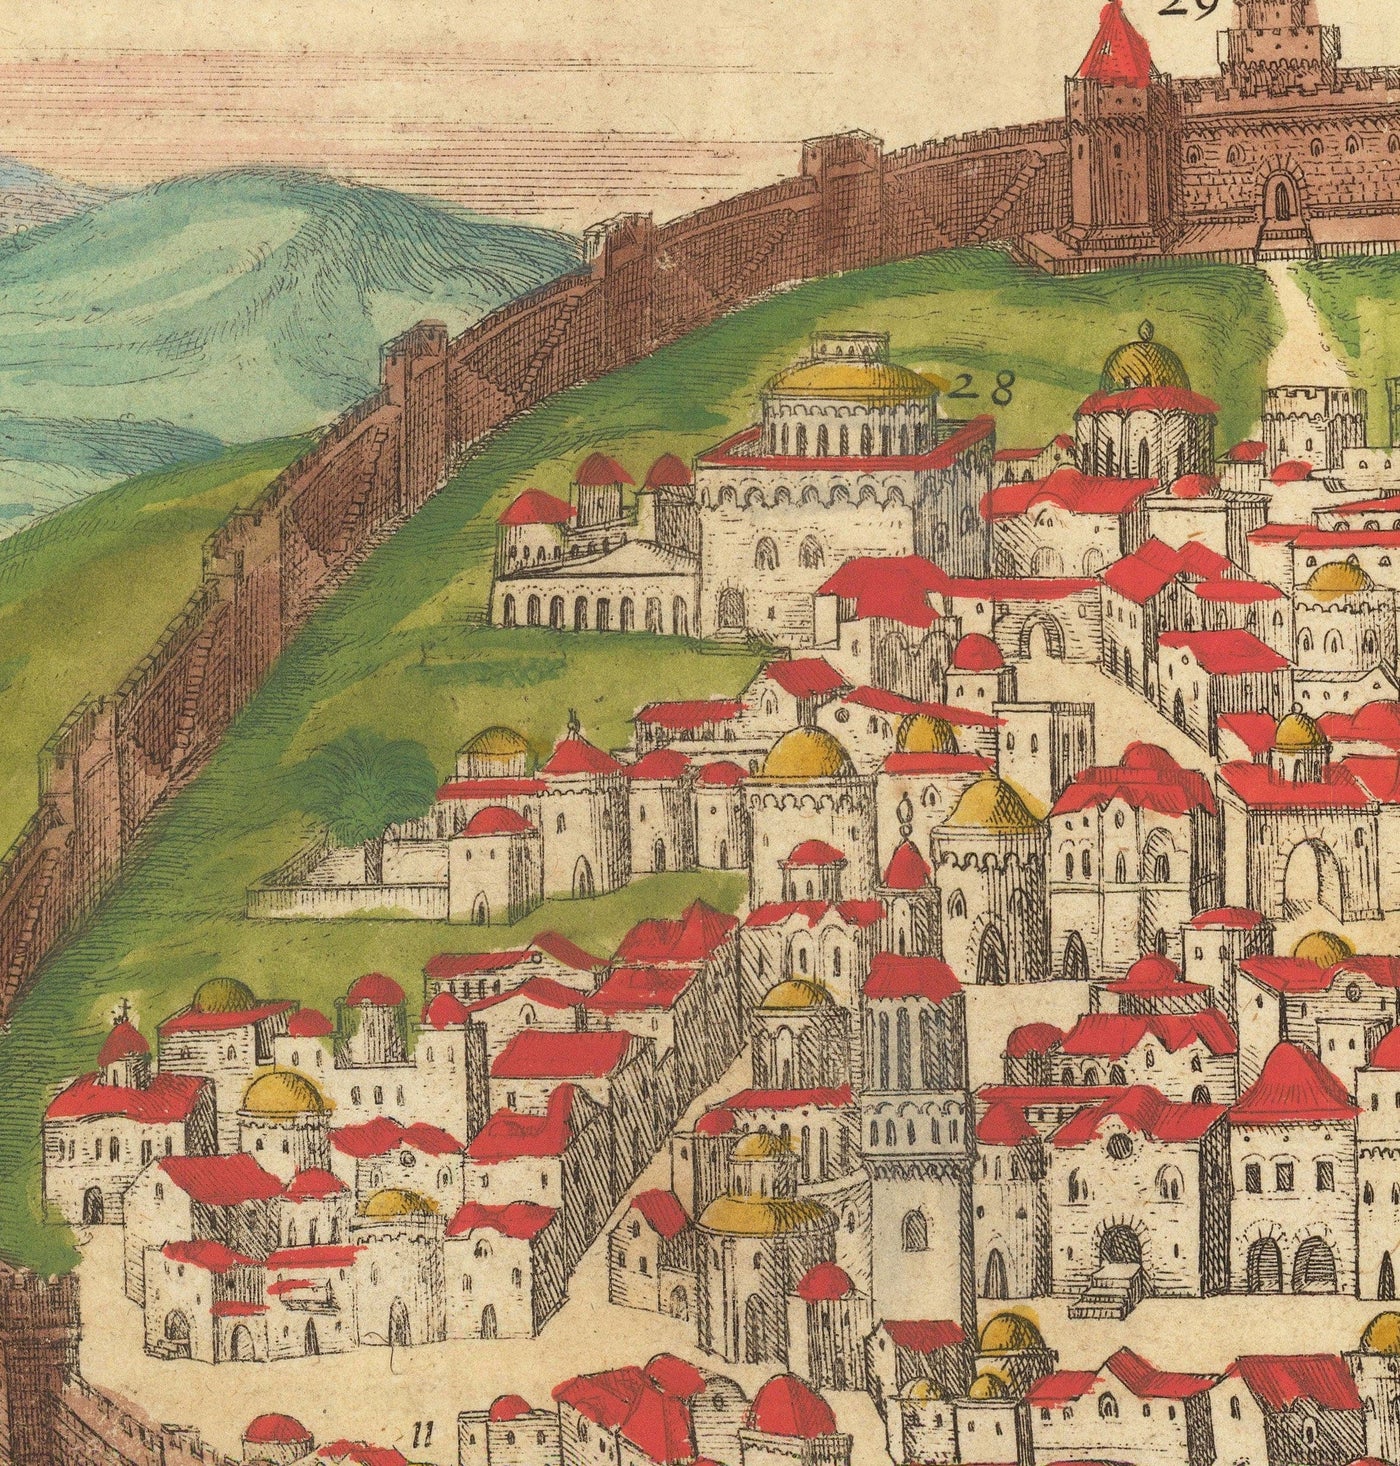 Vieille carte de Jérusalem, 1582 par Georg Braun - Juifs et Islam Vieille ville, Mont du temple, Murs de la ville, Tour de David, Jaffa Gate